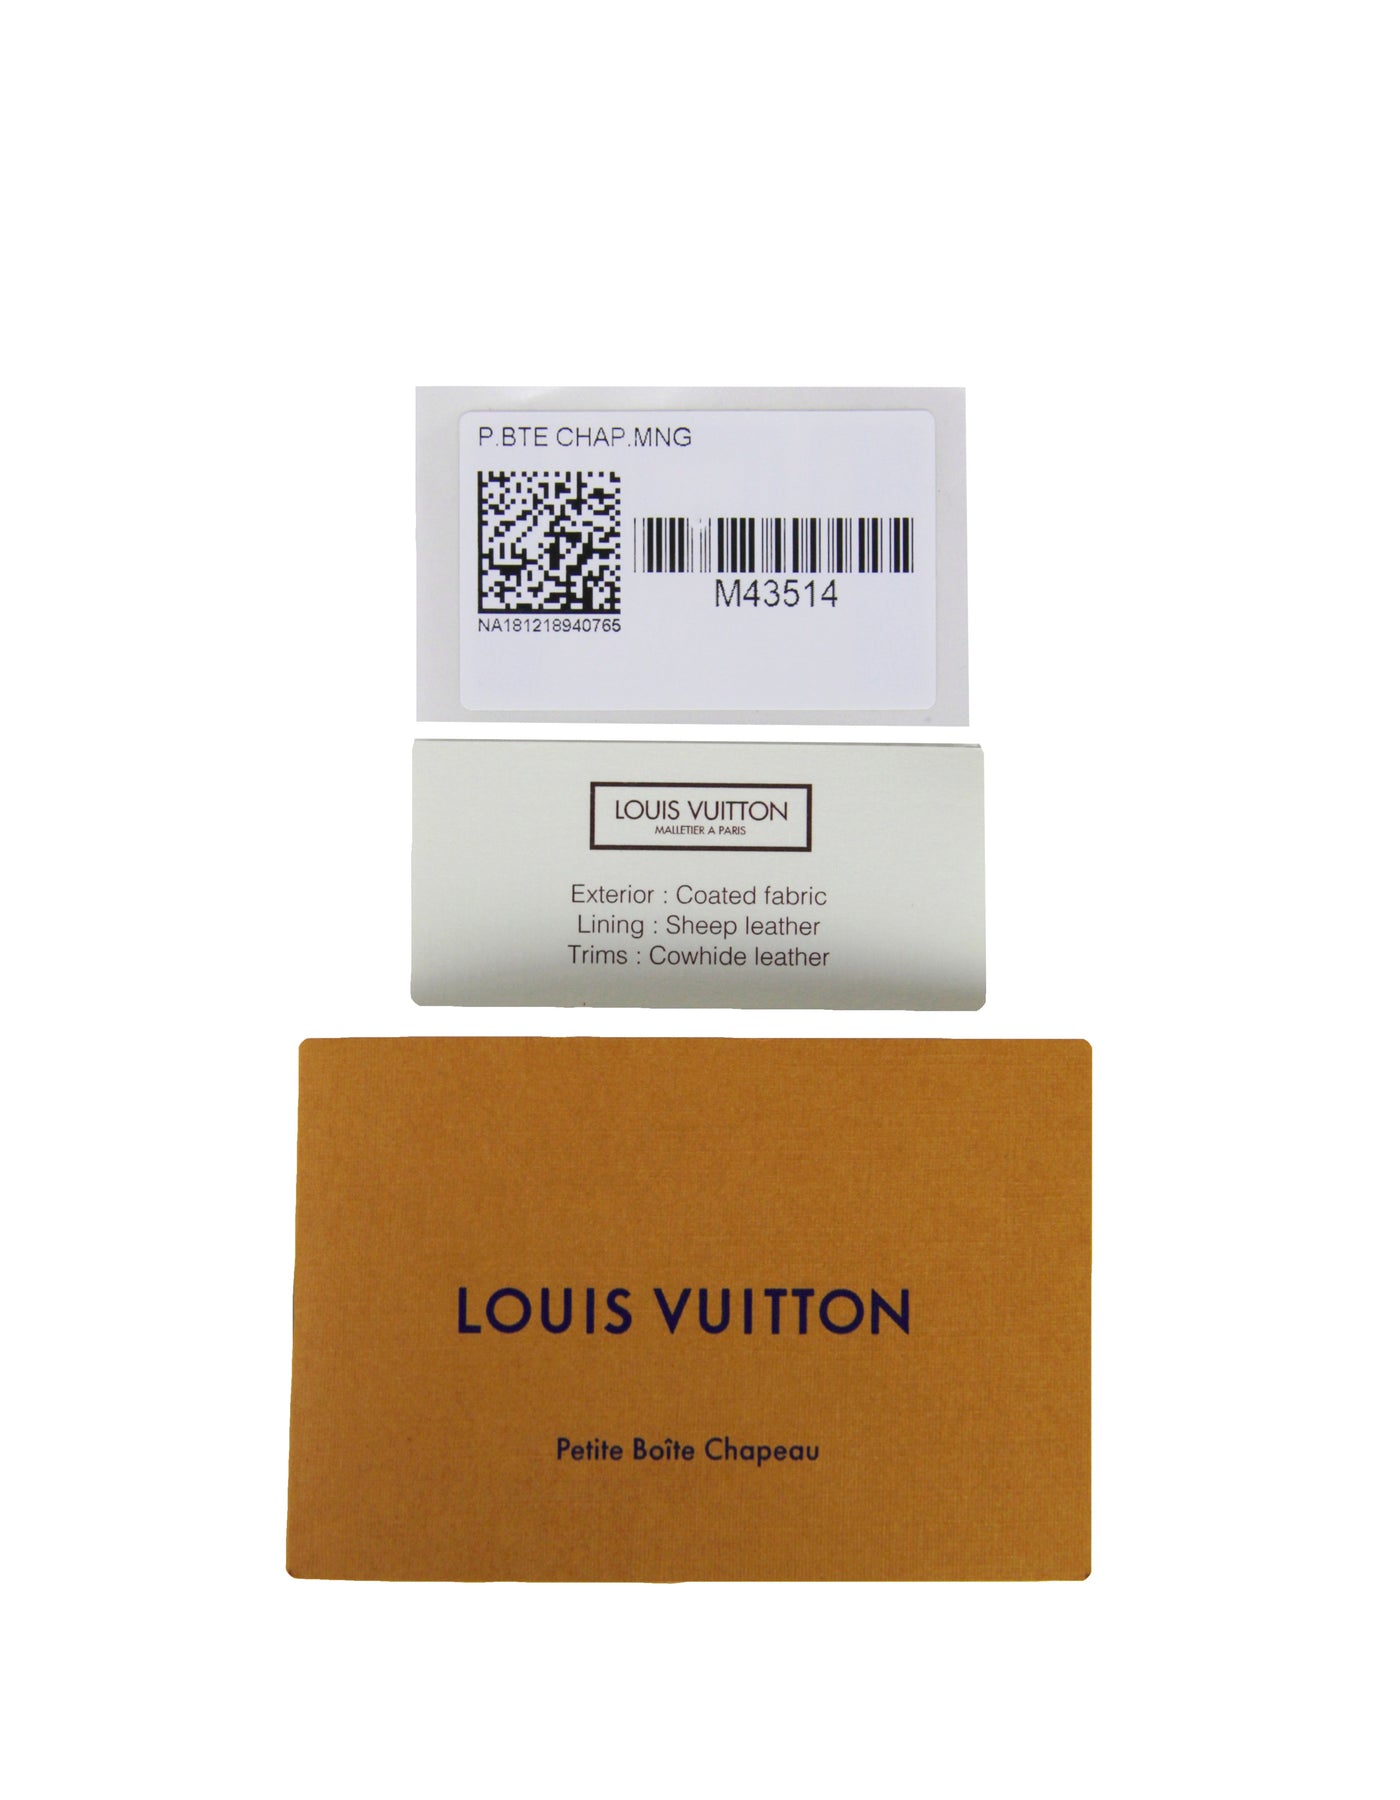 Louis Vuitton Petite Boite Chapeau in Monogram Canvas M43514